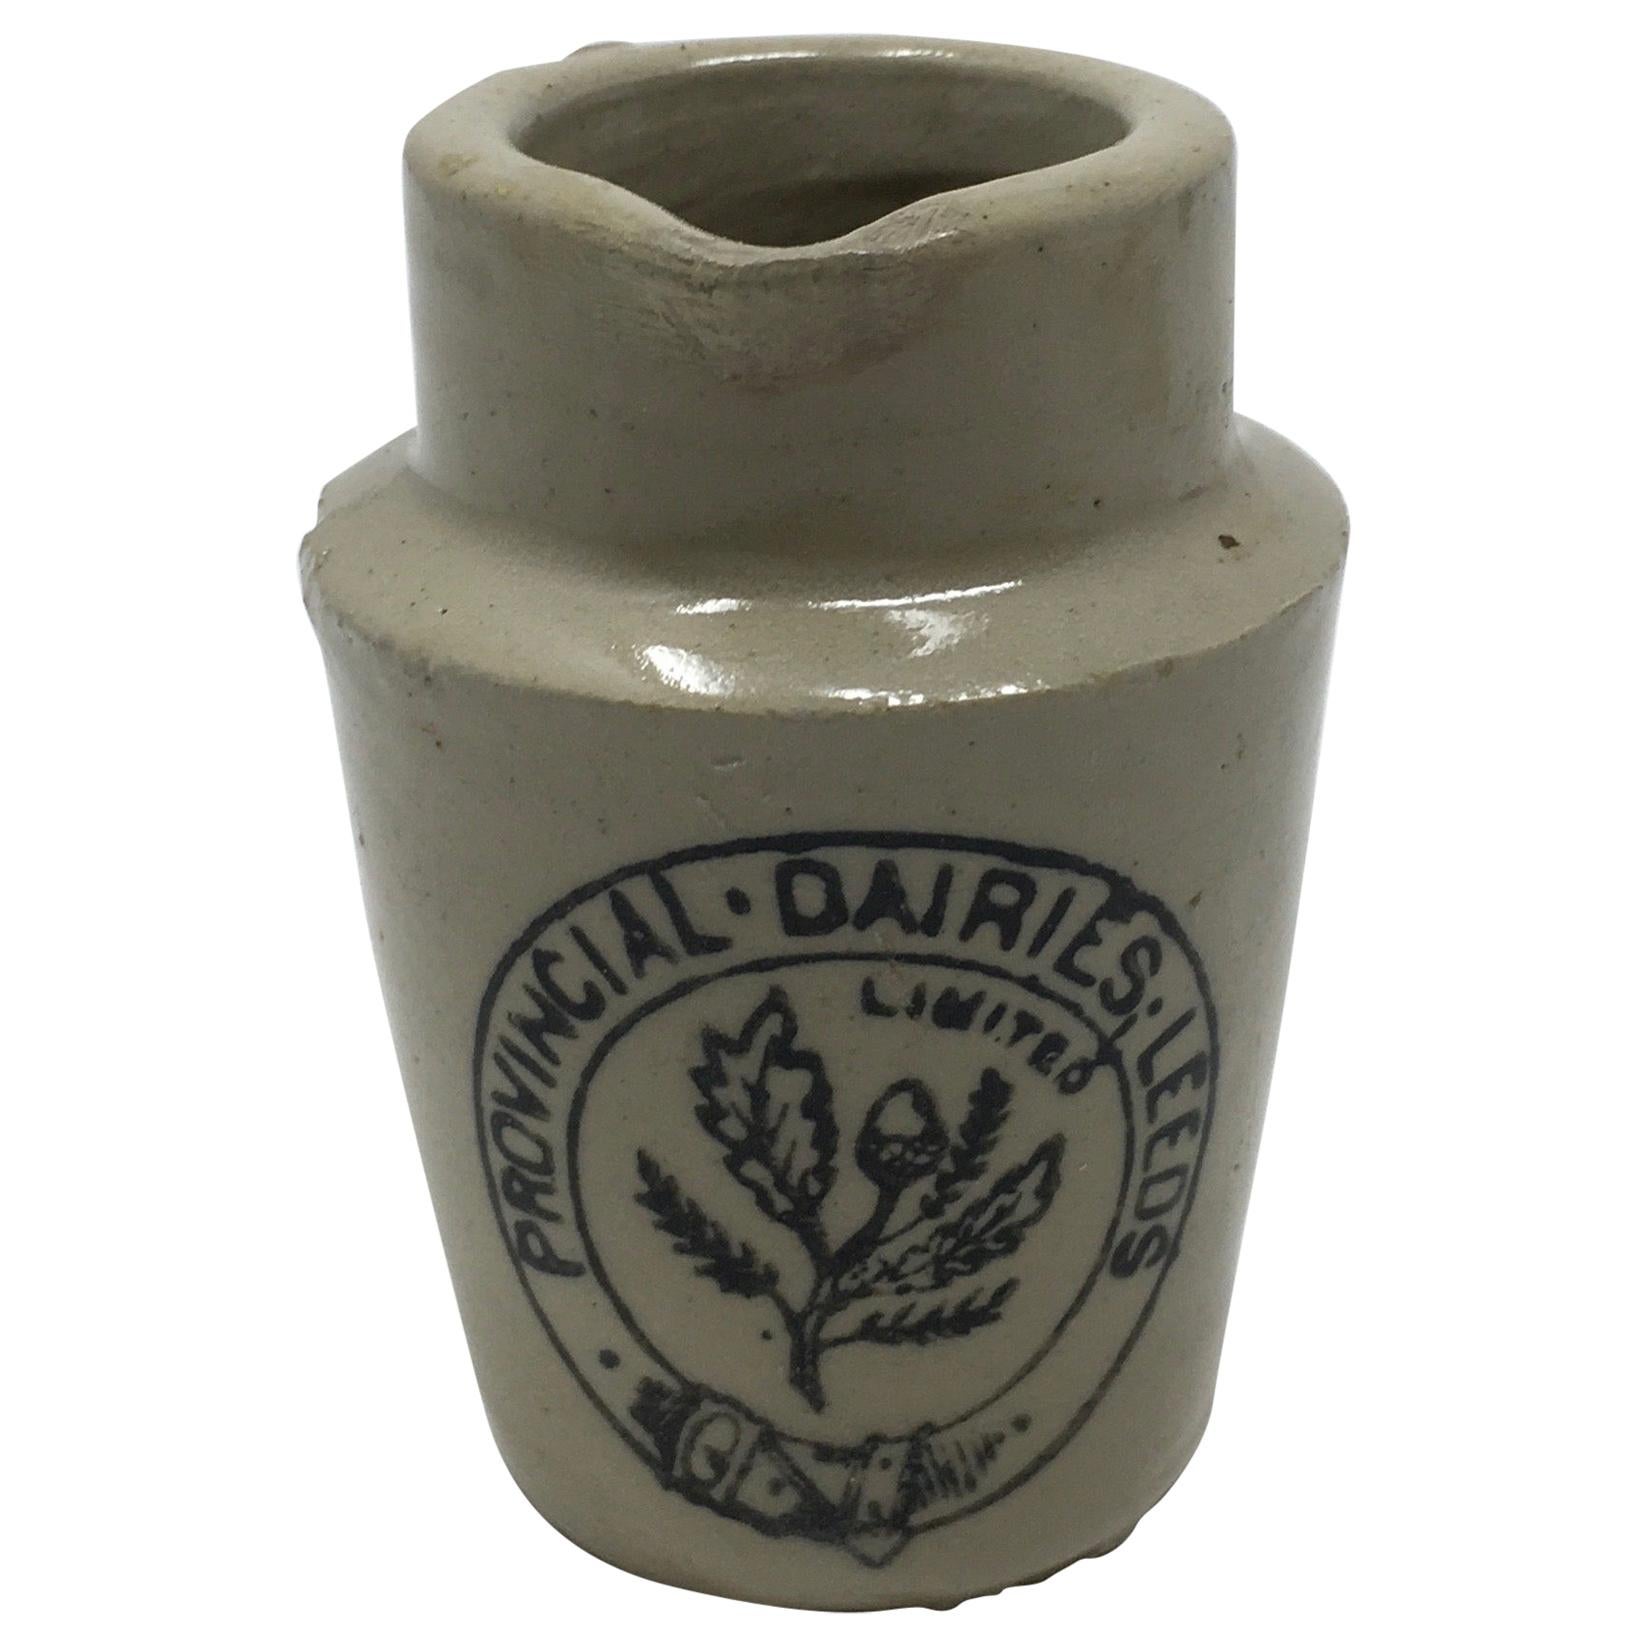 Antique Provincial Dairies Stoneware Transferware Cream Pot